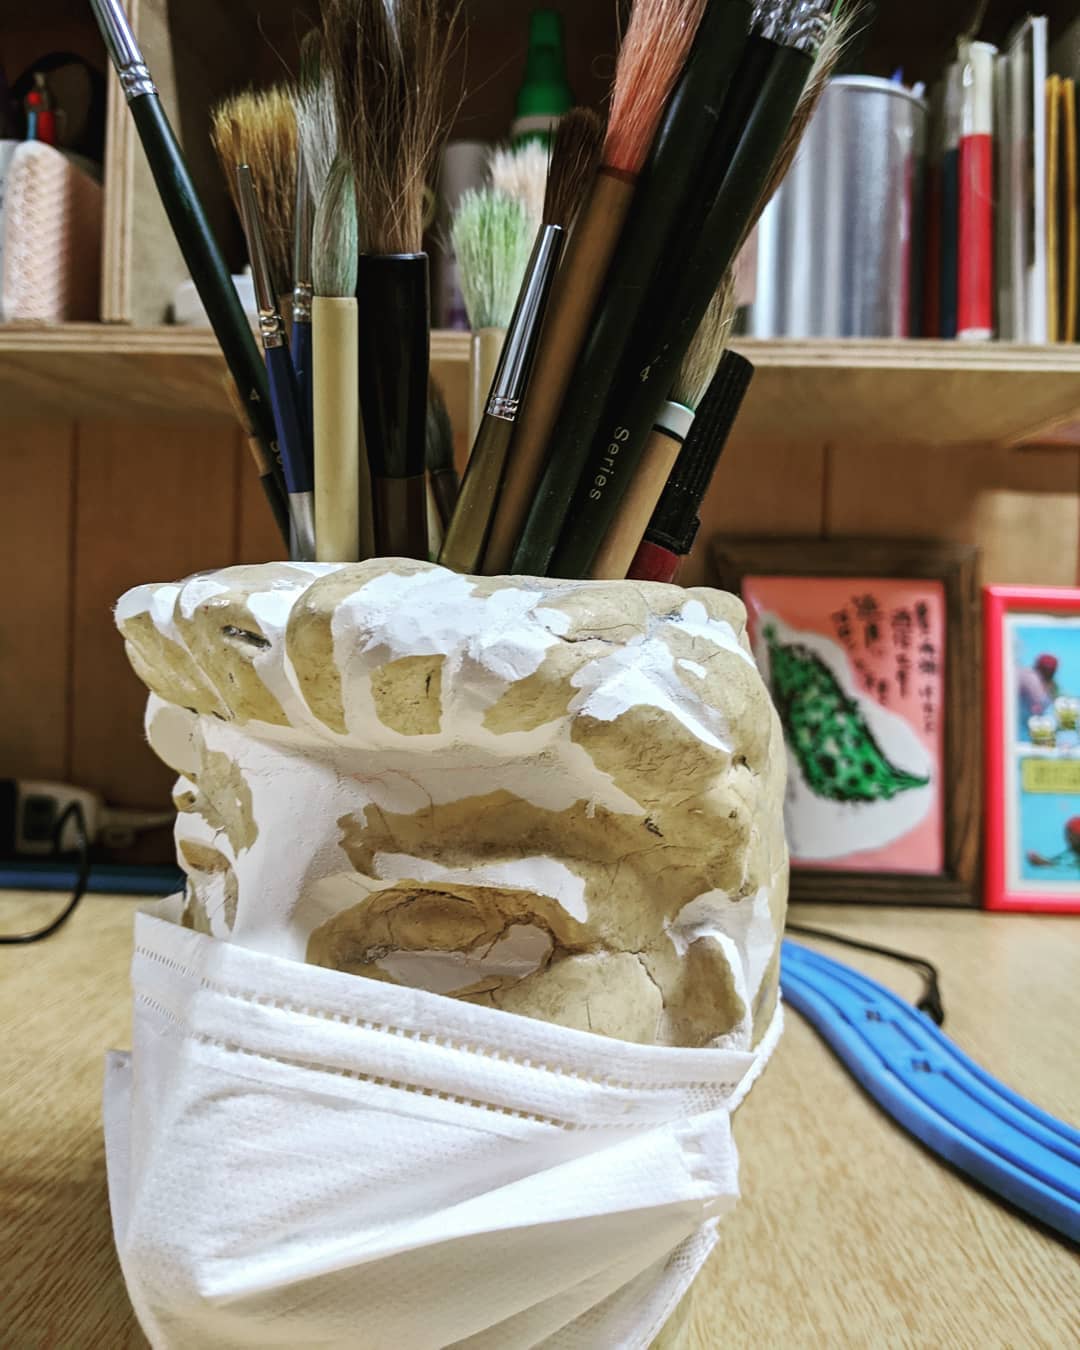 昔の父ちゃんの作品少し手直ししたようですマスクもしました#福山神辺 #昔のペンたて#整形した#コロナ